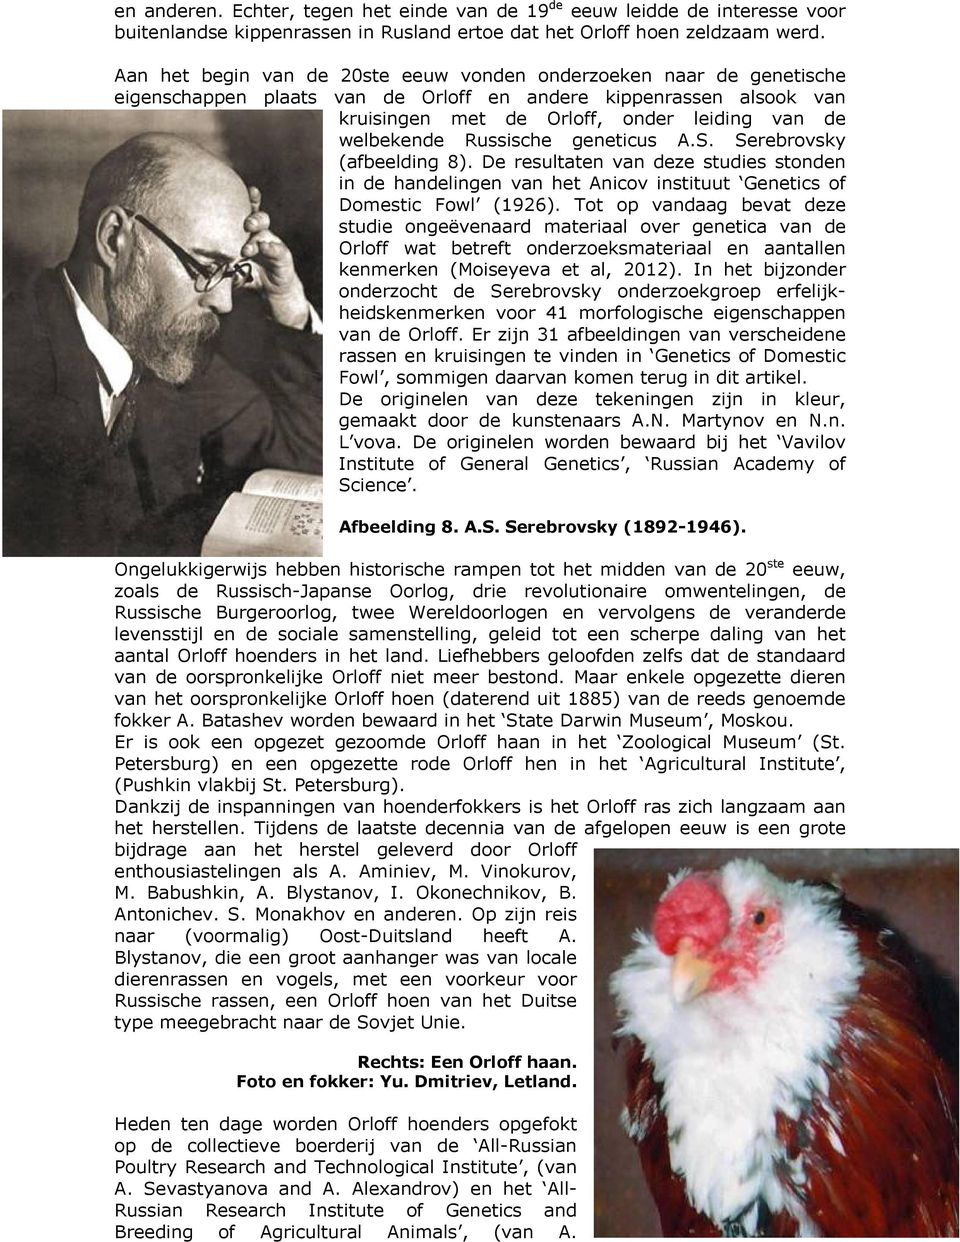 Russische geneticus A.S. Serebrovsky (afbeelding 8). De resultaten van deze studies stonden in de handelingen van het Anicov instituut Genetics of Domestic Fowl (1926).